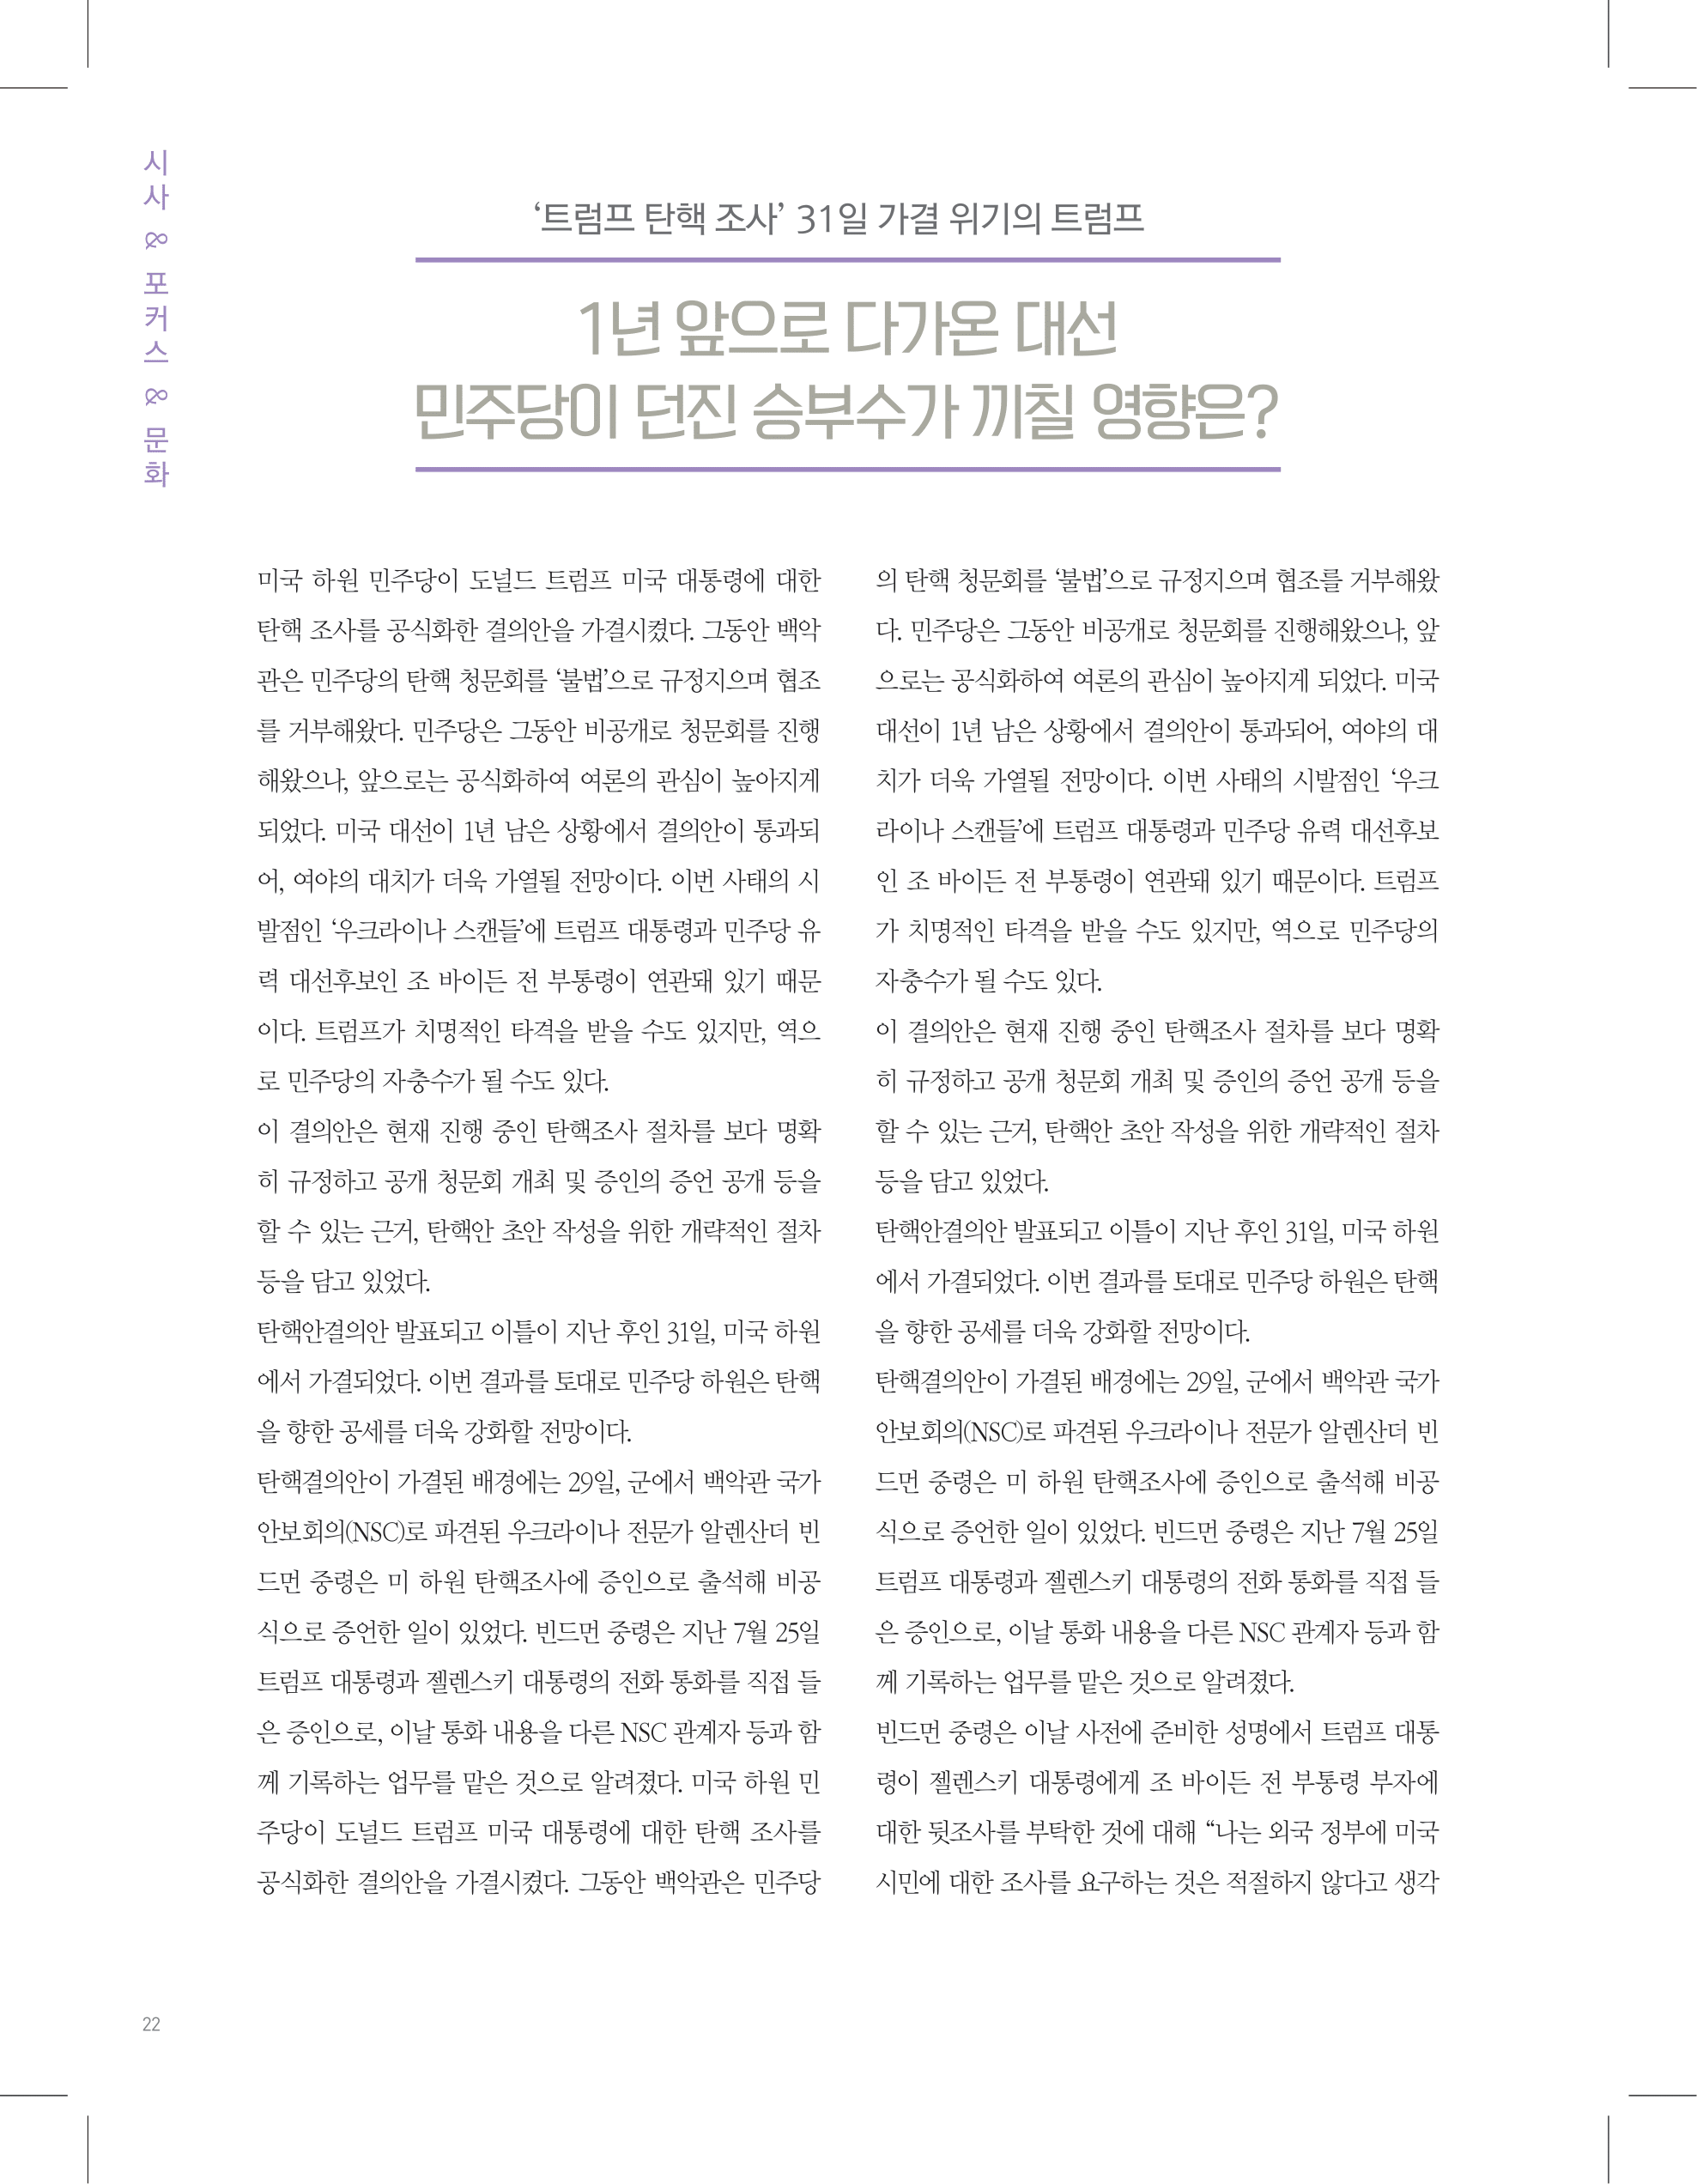 뜻새김 신문 74호 22